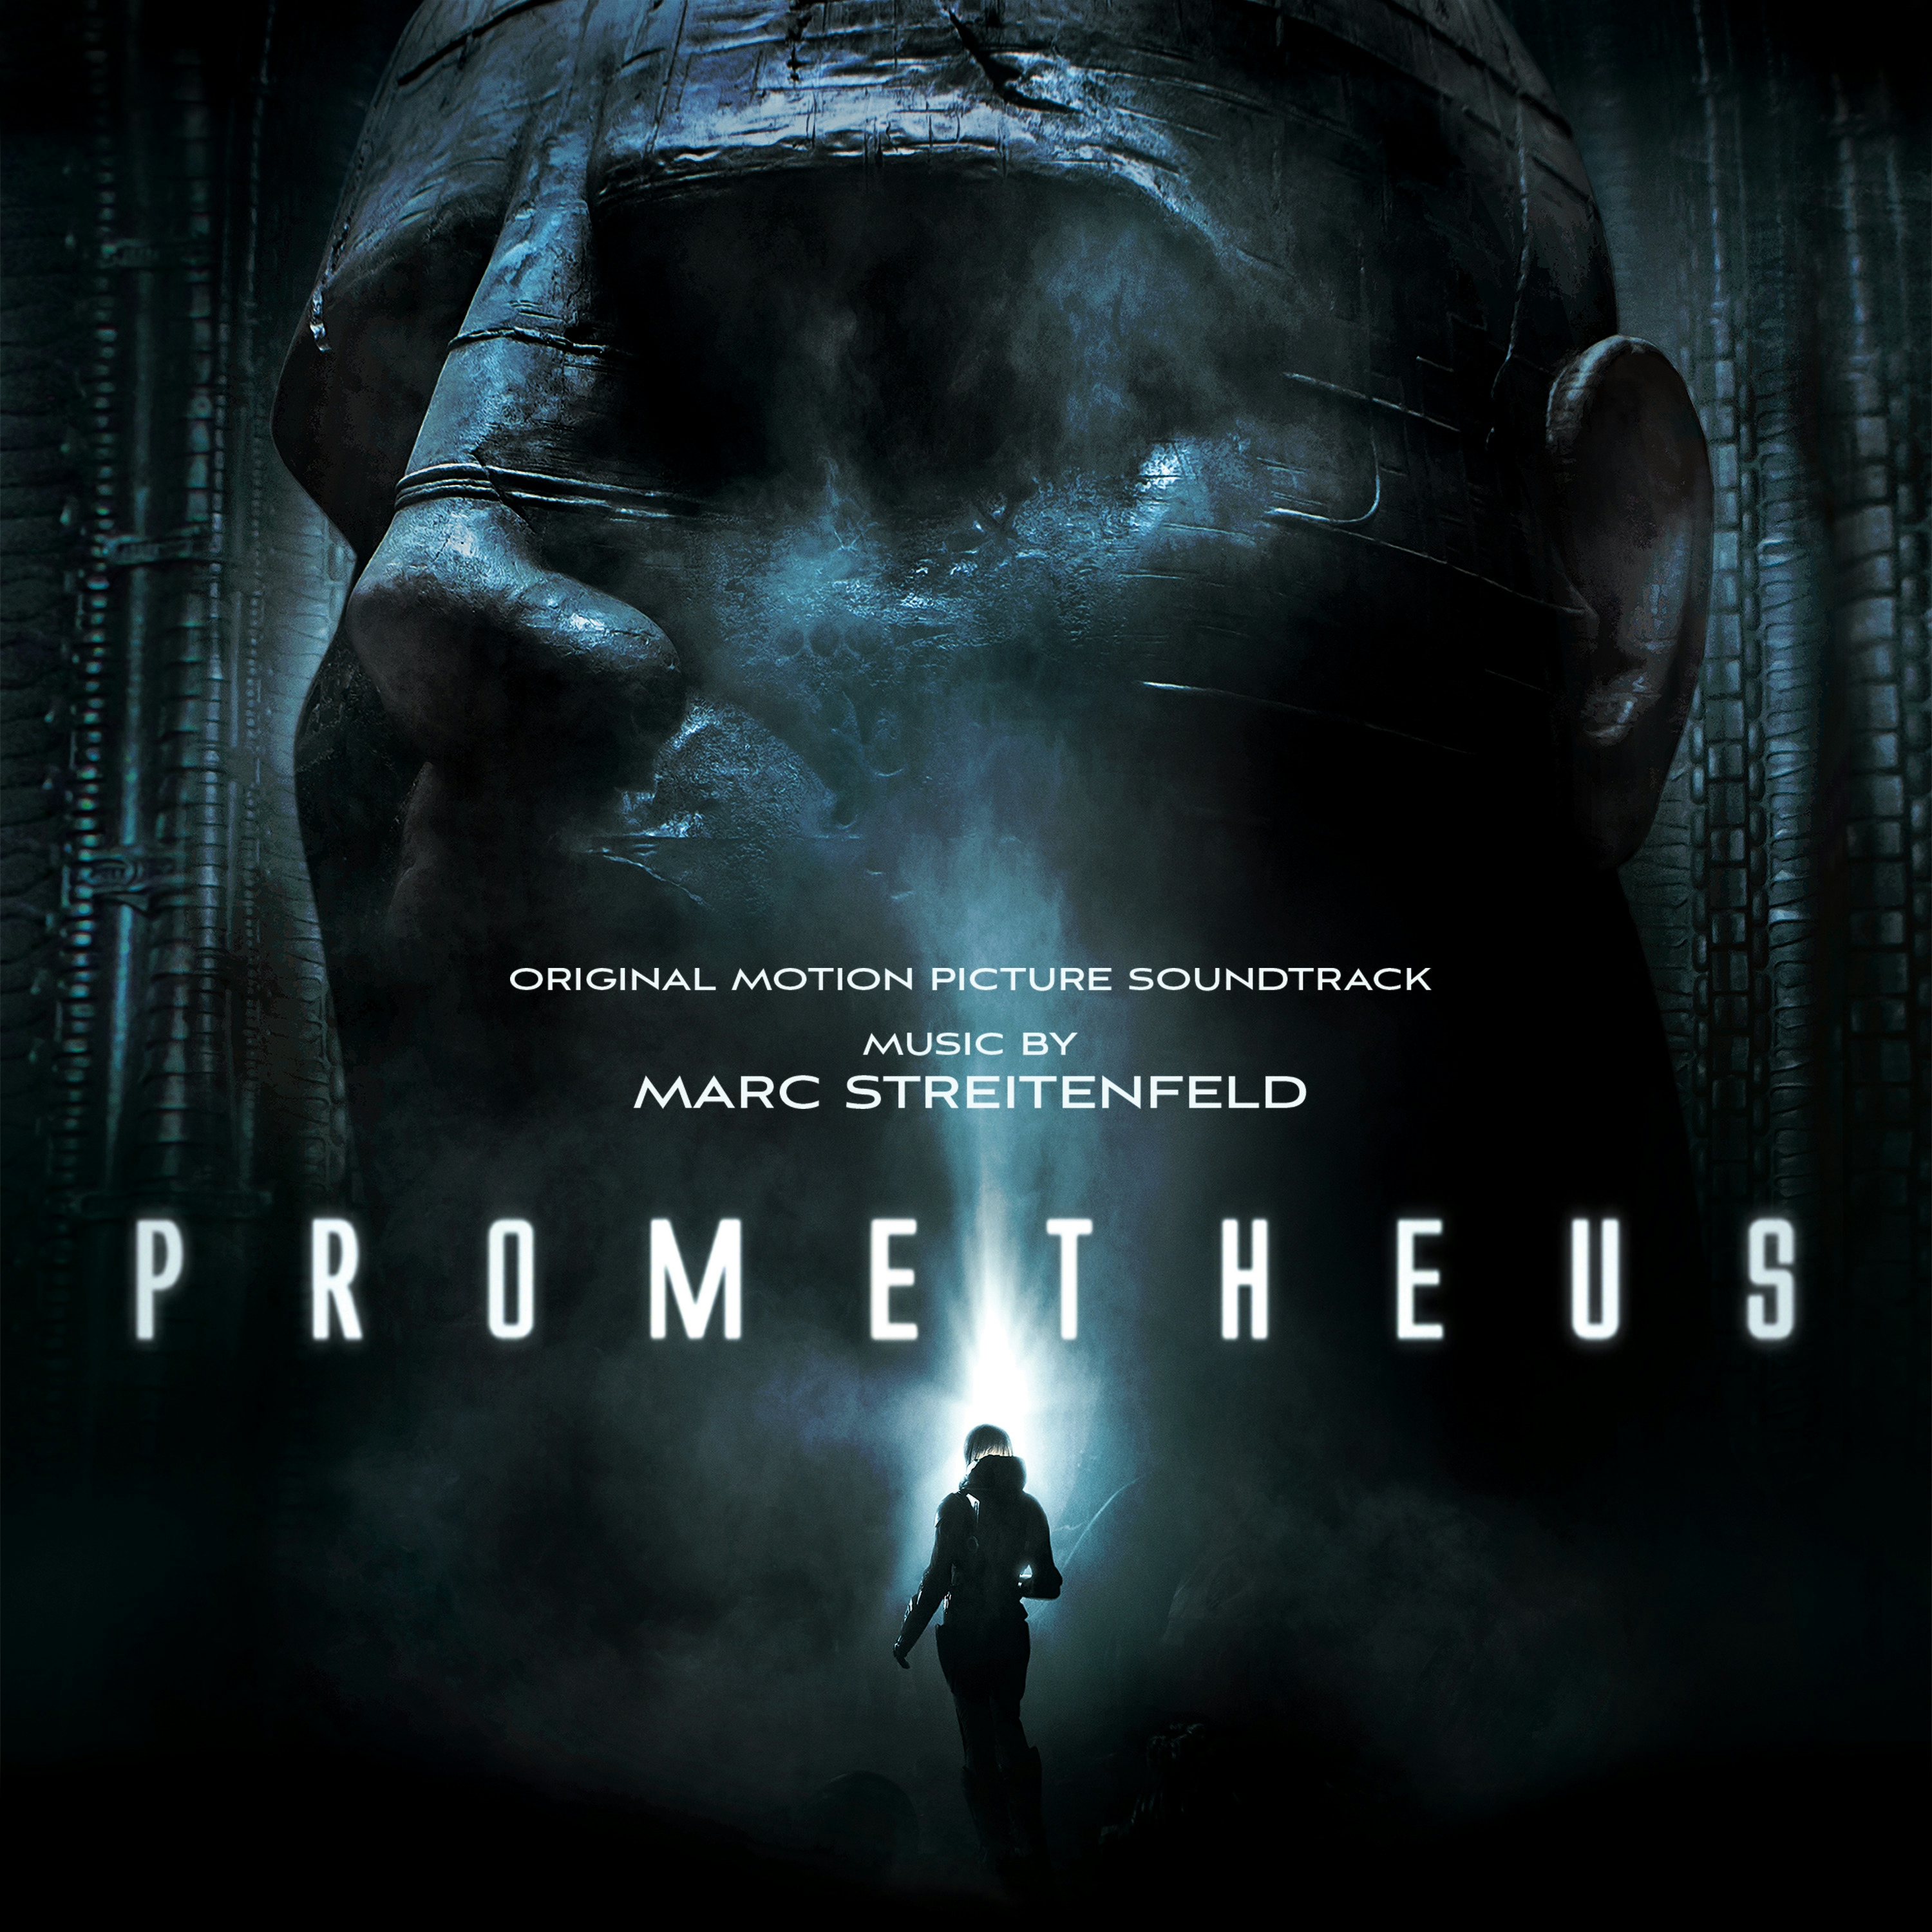 Album artwork for Prometheus by Original Soundtrack